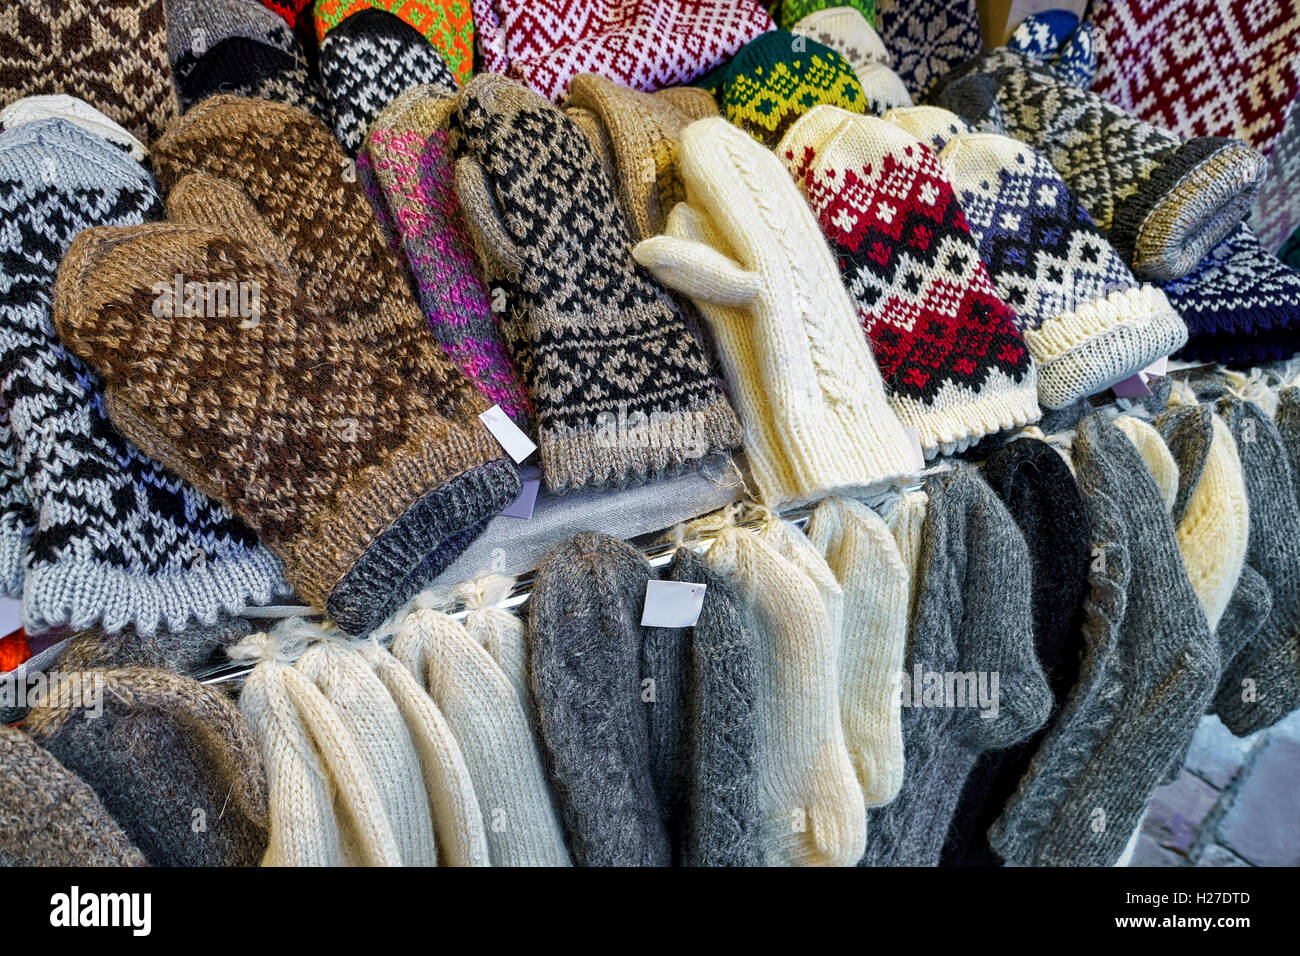 Mitaines en laine et chaude, des gants et des chaussettes à l'un des stand  pendant le marché de Noël à Riga, Lettonie. Le marché est annuel et se  déroule à partir de